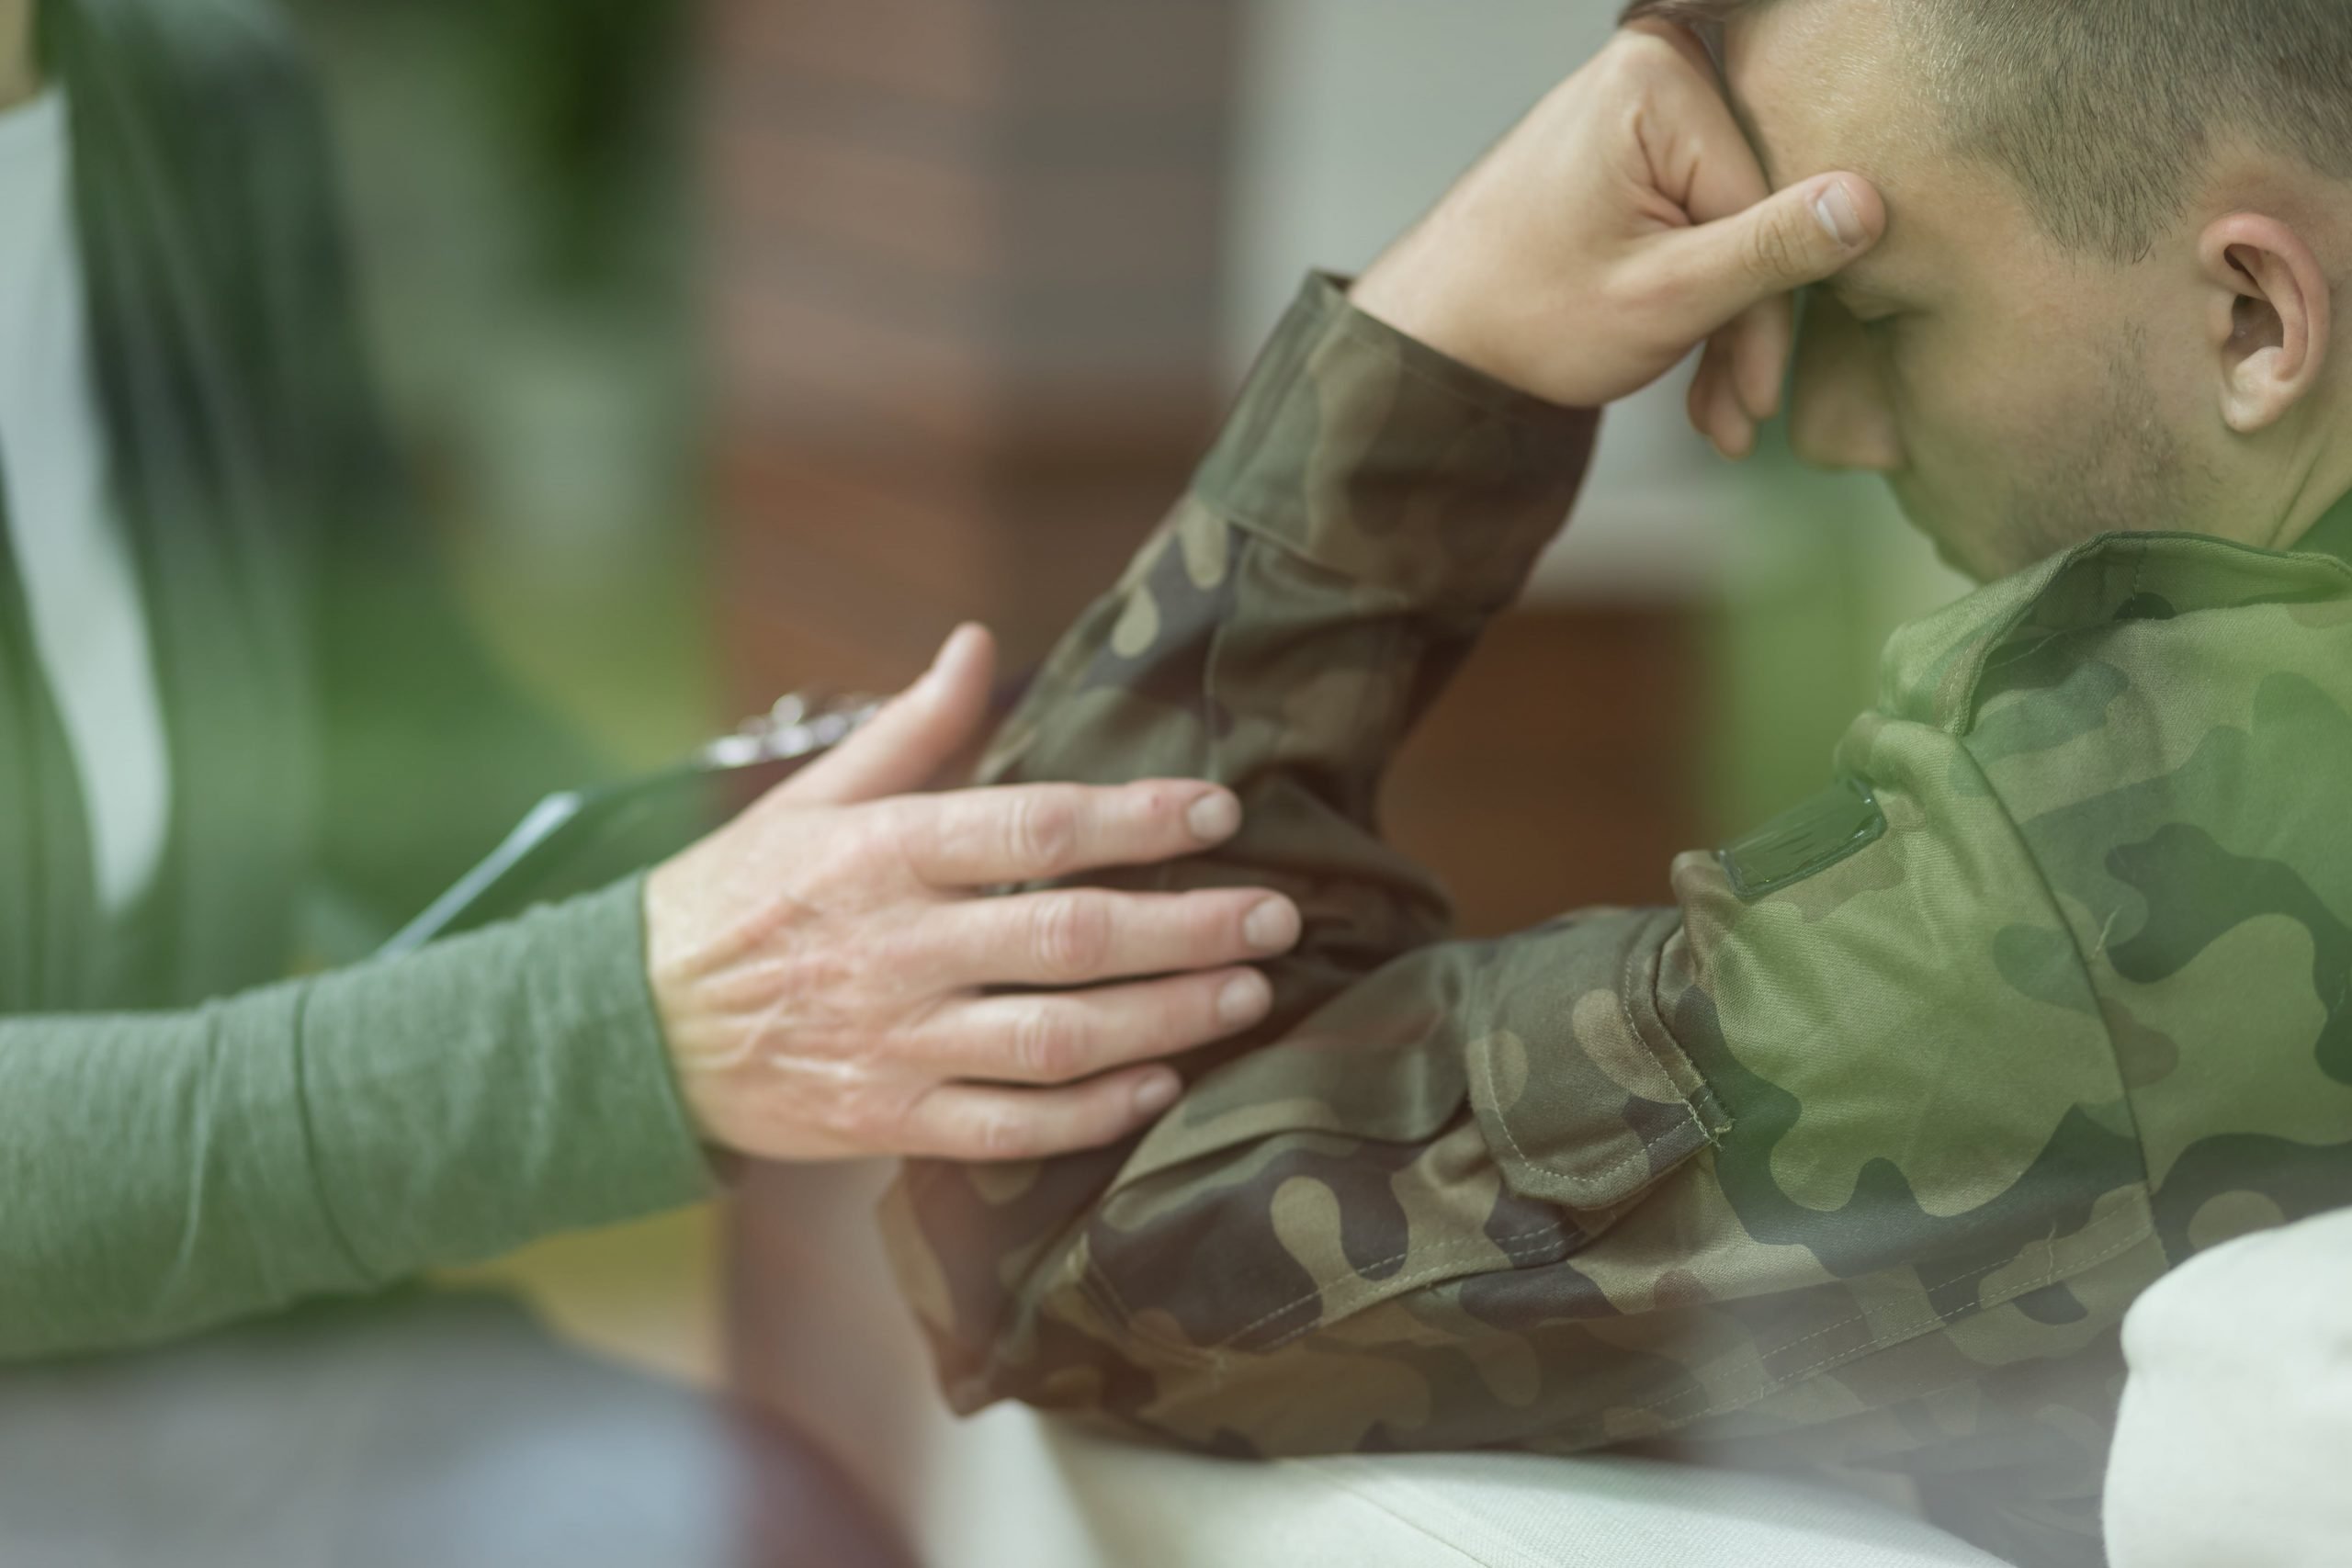 Veterans Drug Abuse: Treatment for Co